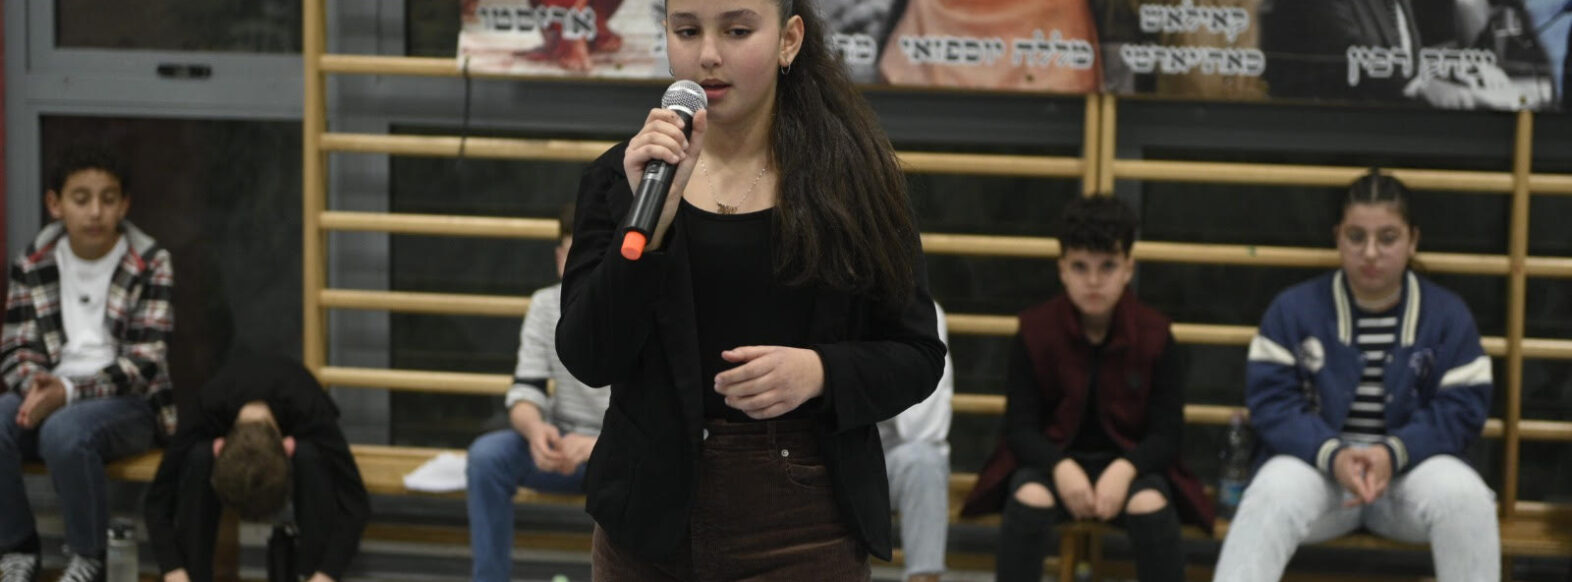 ליאור גלוזמן תלמידת כיתה ו’ בבית ספר גבעת רם בביה”ס זכתה במקום הראשון בתחרות “הנואם הצעיר” 